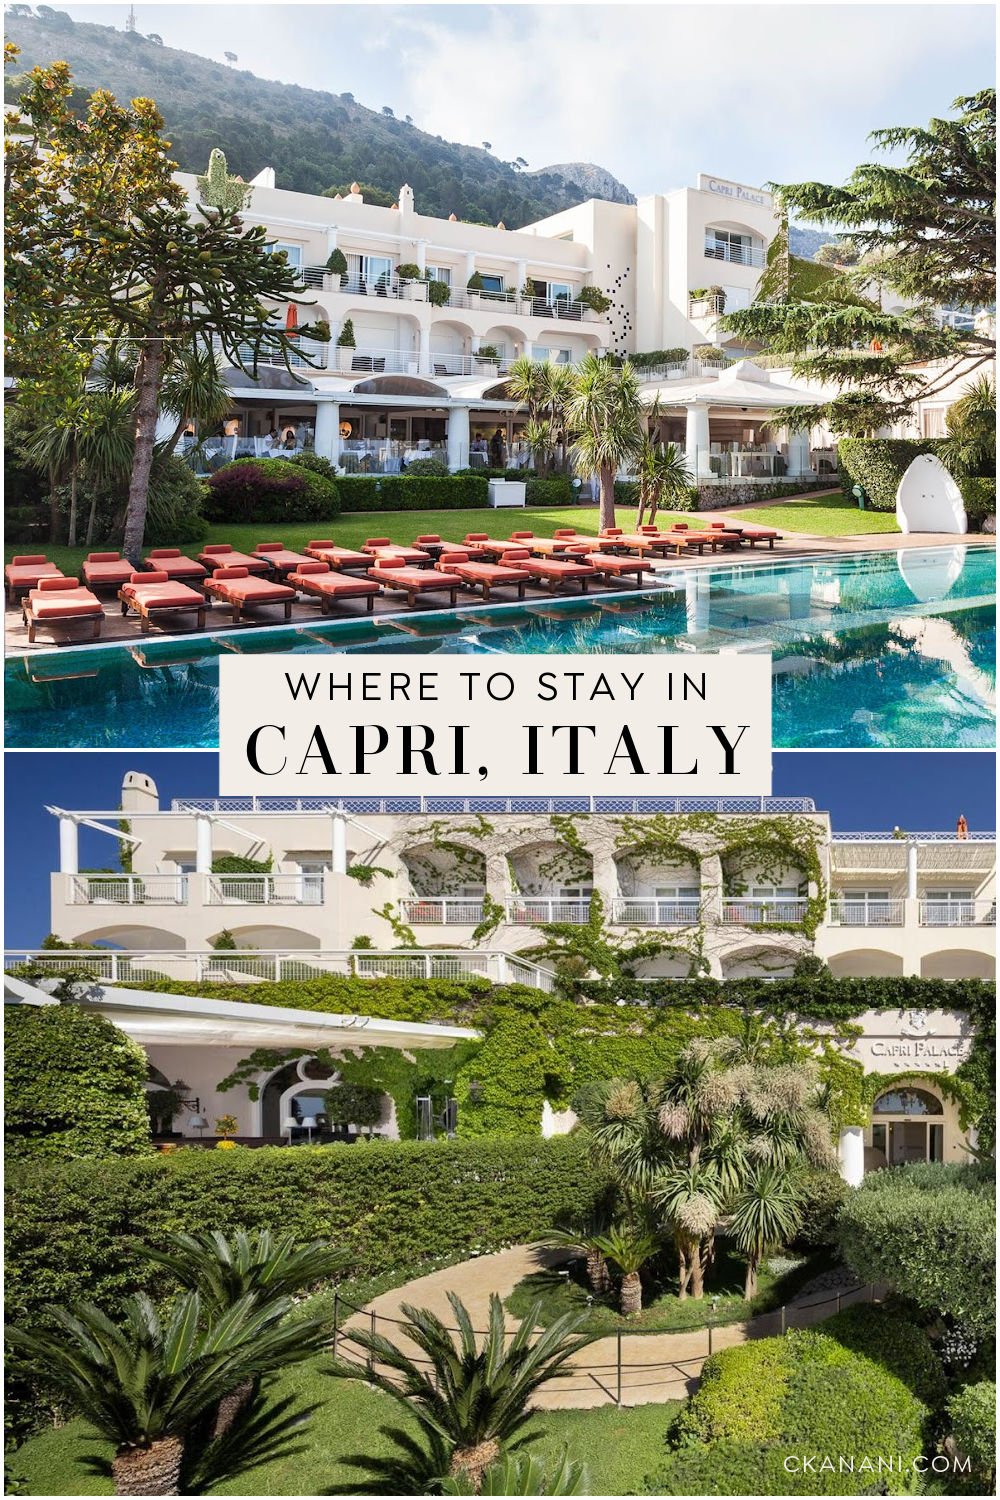 Where to stay in Capri Italy. Luxury hotels, Amalfi Coast Italy, Europe travel destinations, Europe vacation, Italy travel guide, Italy destinations, Italy itinerary, Italy honeymoon, Positano Italy